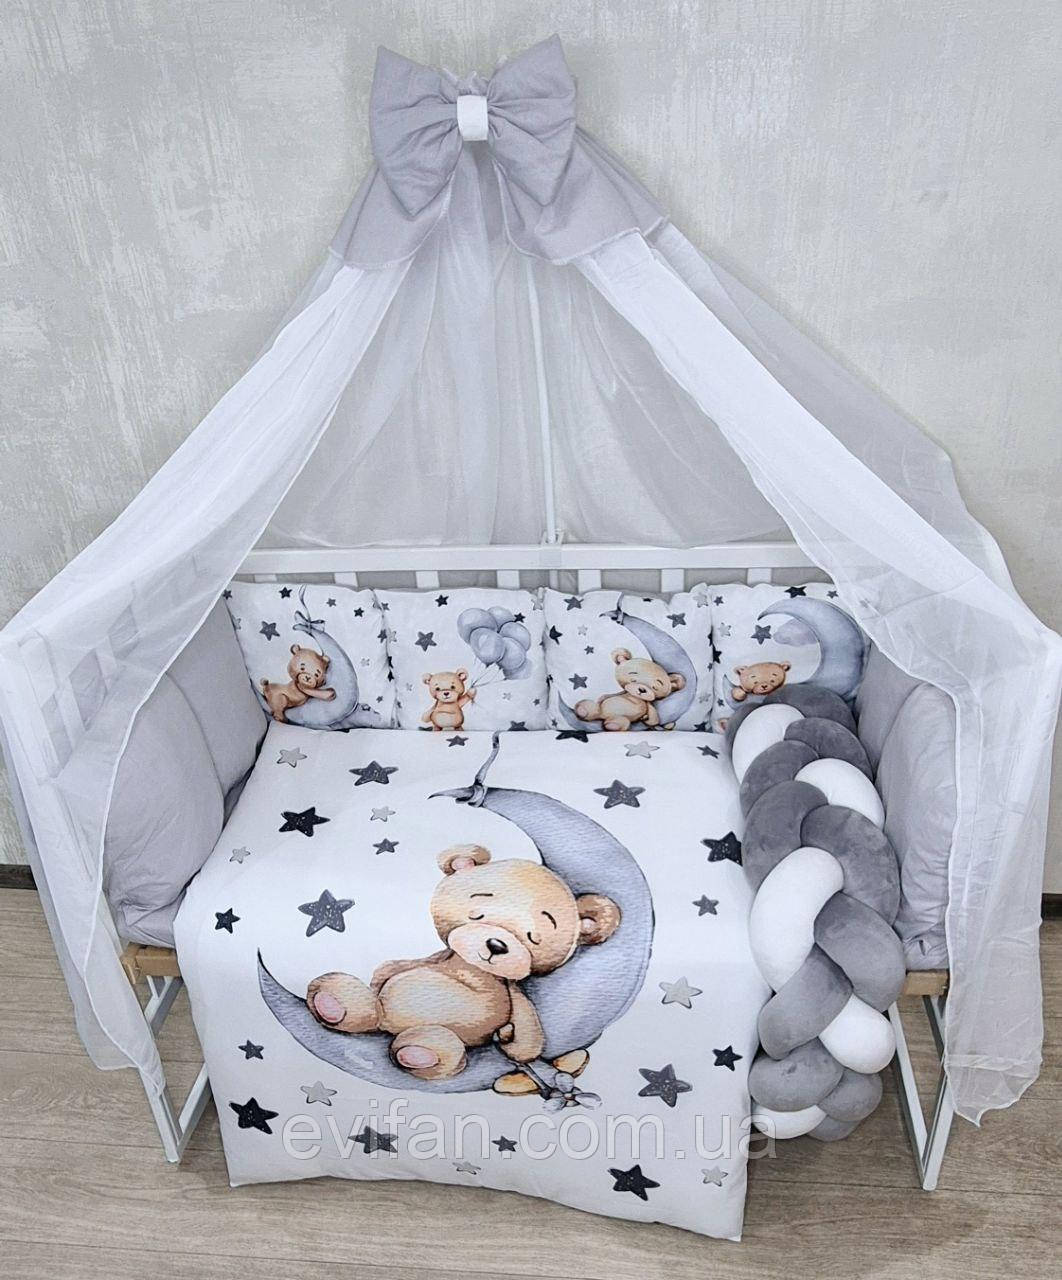 Дитячий постільний набір і балдахін для ліжечка - ідеальне рішення для новонароджених!